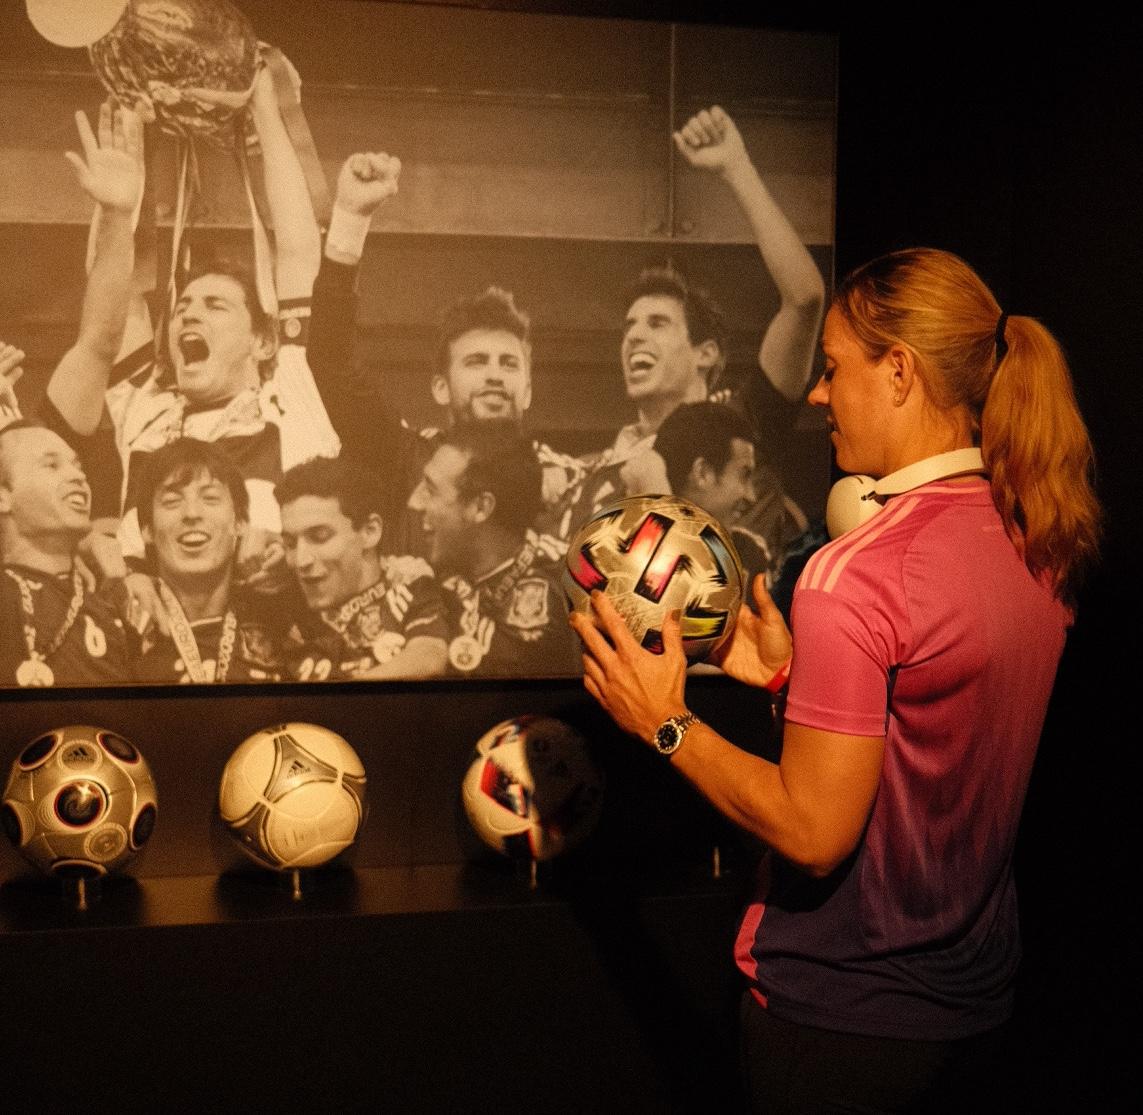 Angelique Kerber nutzte ihre Zeit am "Home of adidas Football" um die historische EURO-Ausstellung zu besuchen.